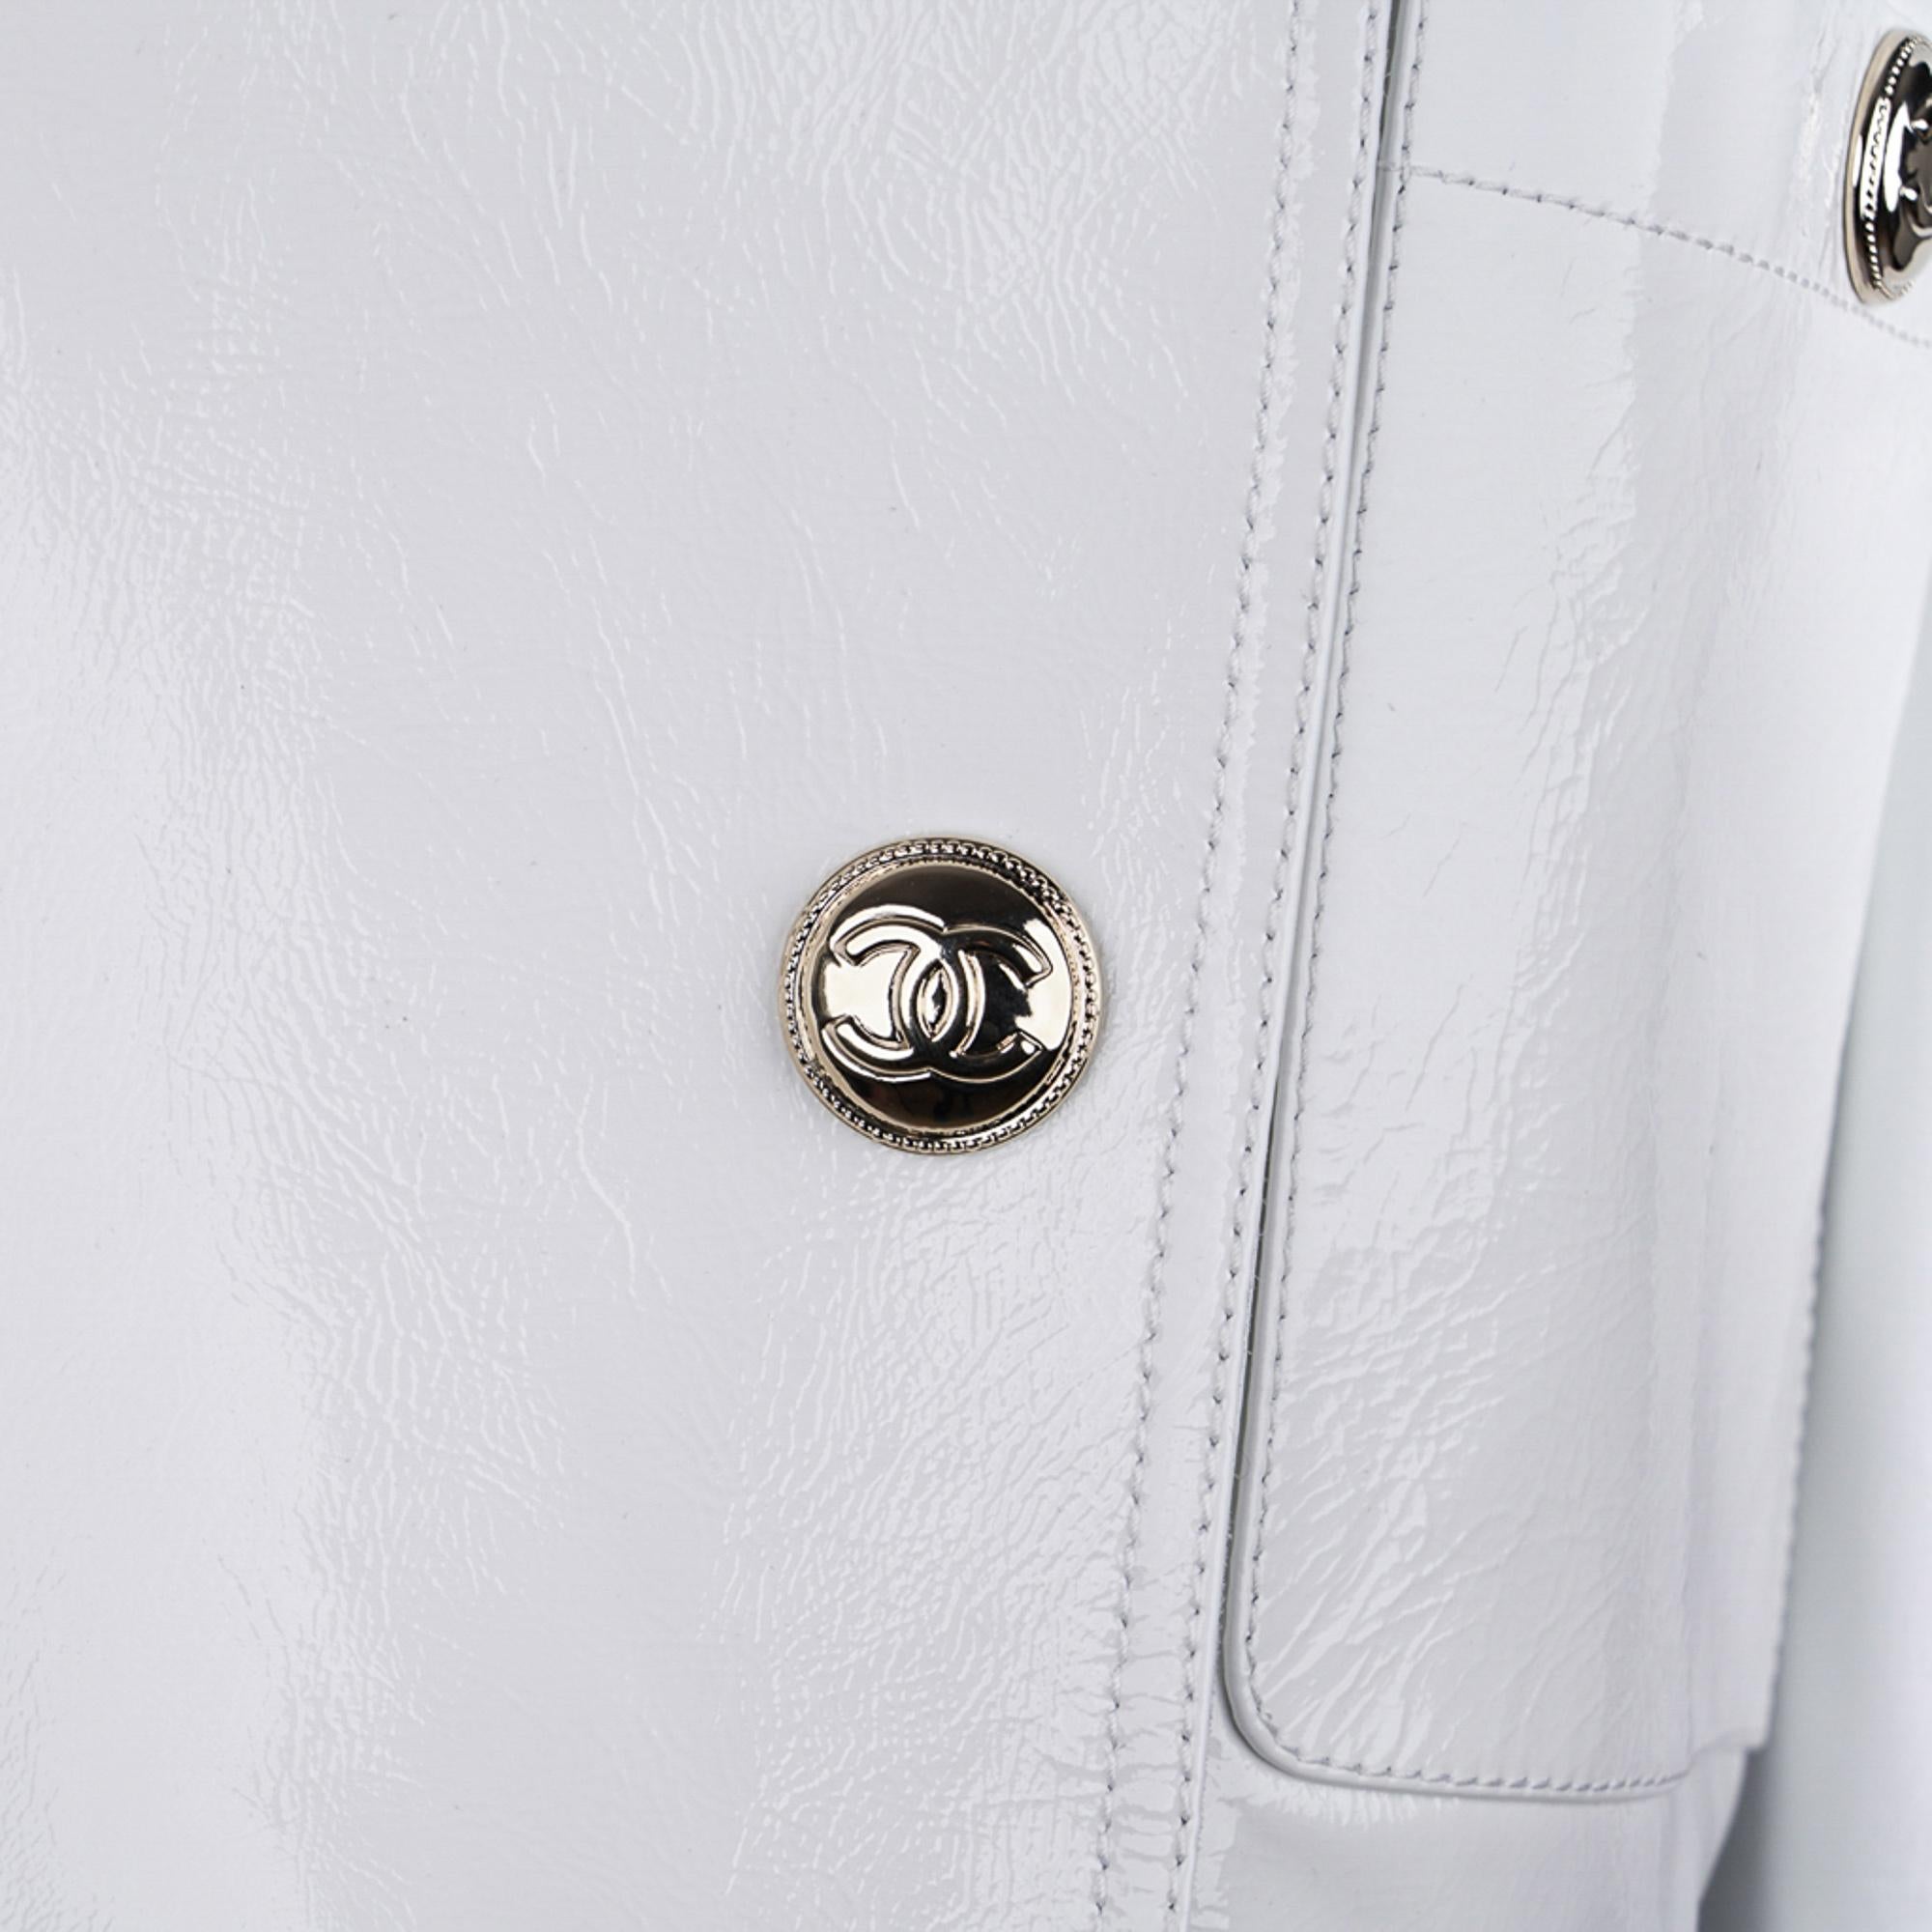 Mightychic propose une rare veste Chanel 2020-21FW en cuir verni blanc.
Absolument fabuleux !
Veste courte de motard à la taille avec col montant.
Matériel argenté audacieux avec centre CC.
4 boutons pression CC asymétriques argentés.
2 poches